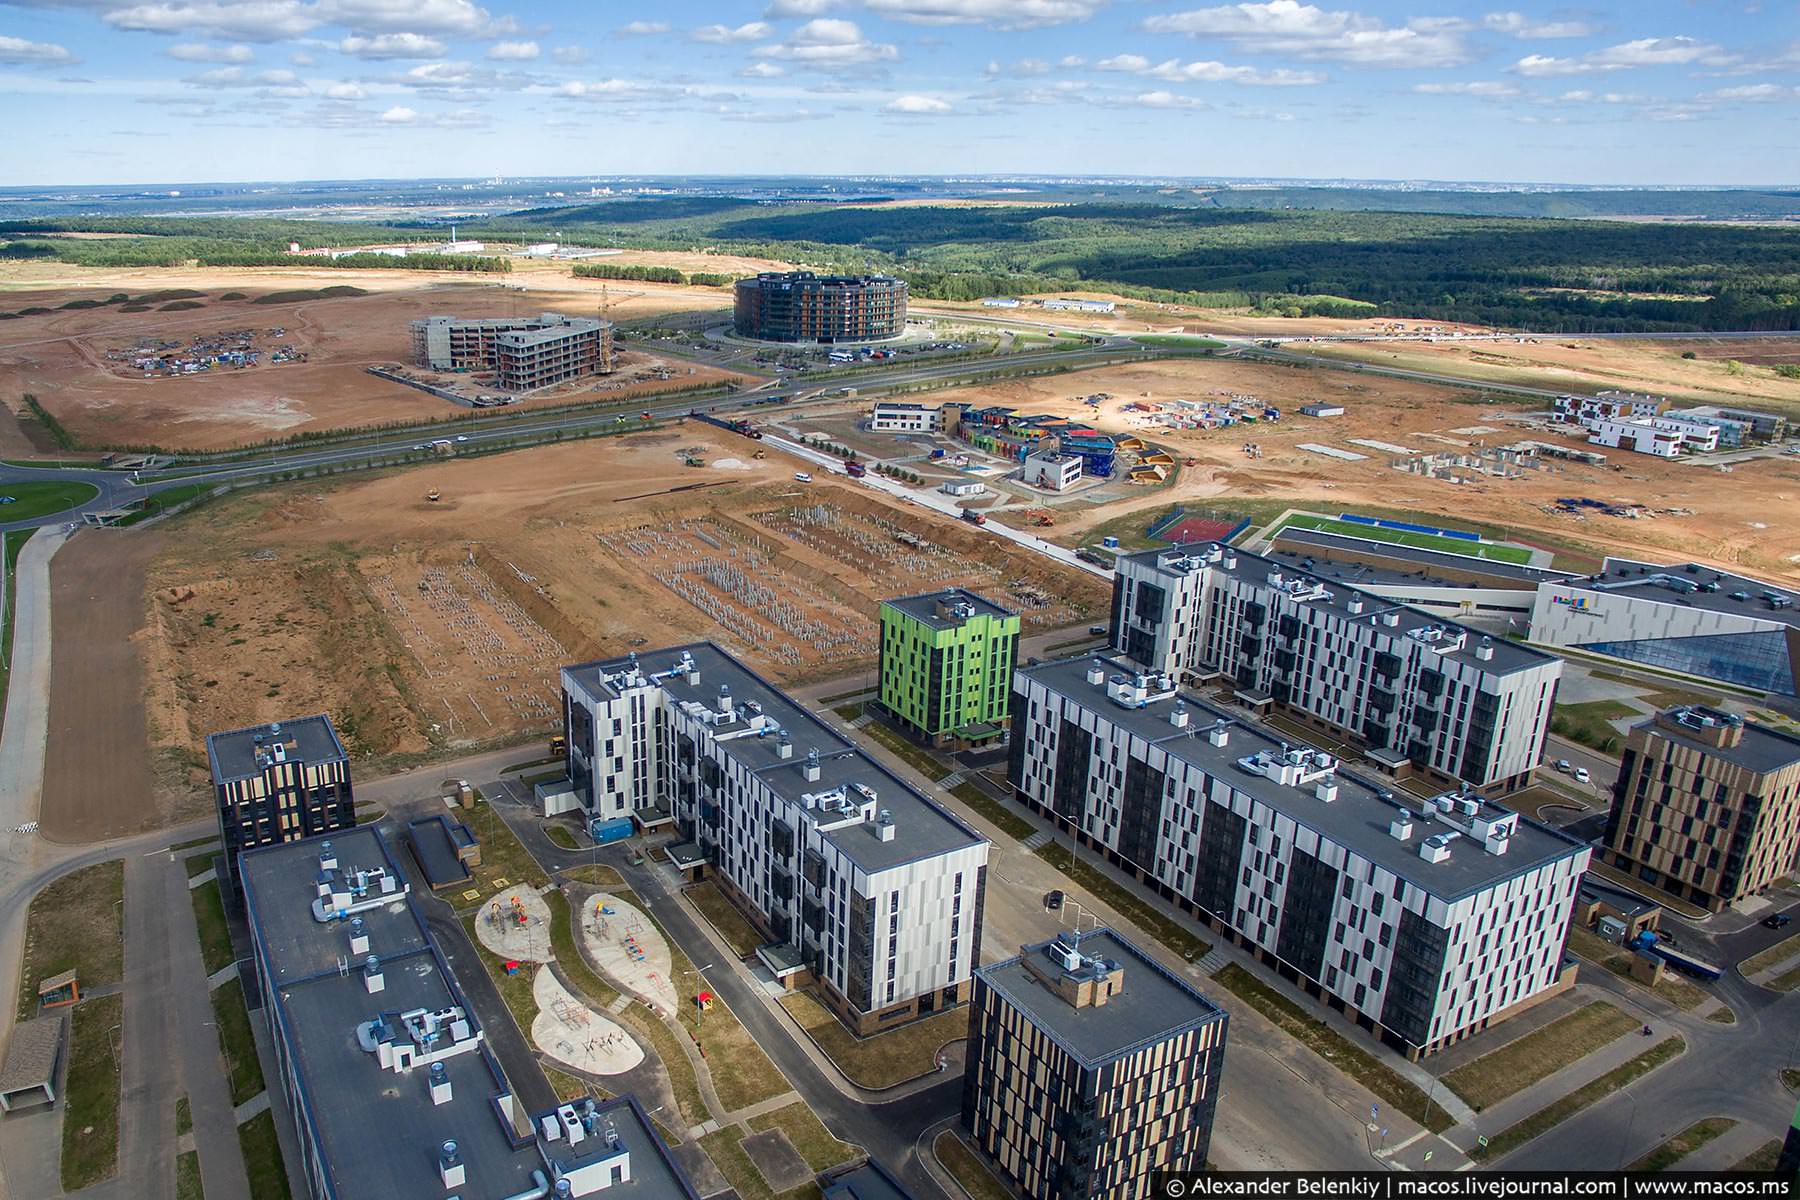 Казань развитие города